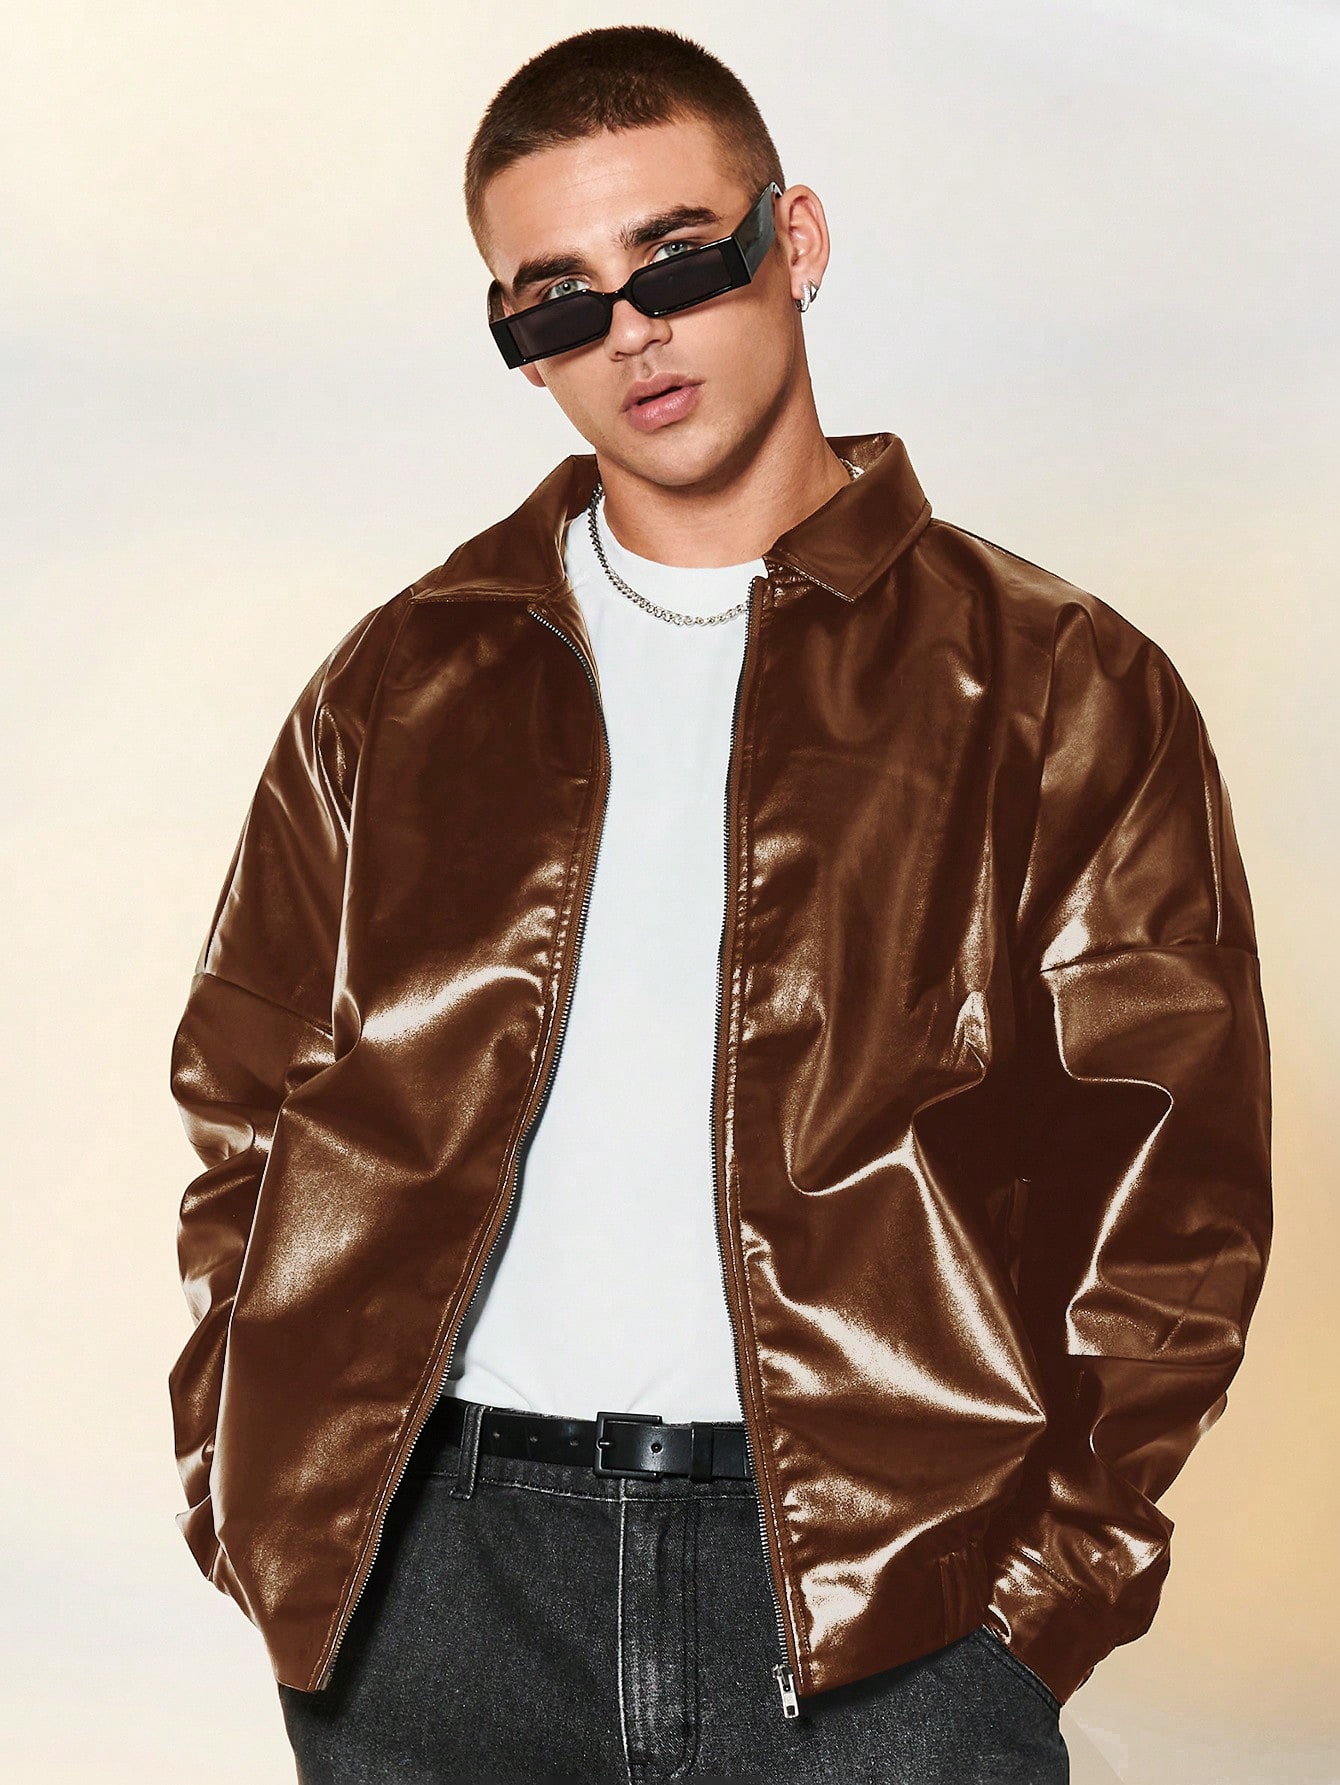 Мужская глянцевая куртка с воротником-стойкой и молнией спереди Manfinity EMRG, кофейный коричневый